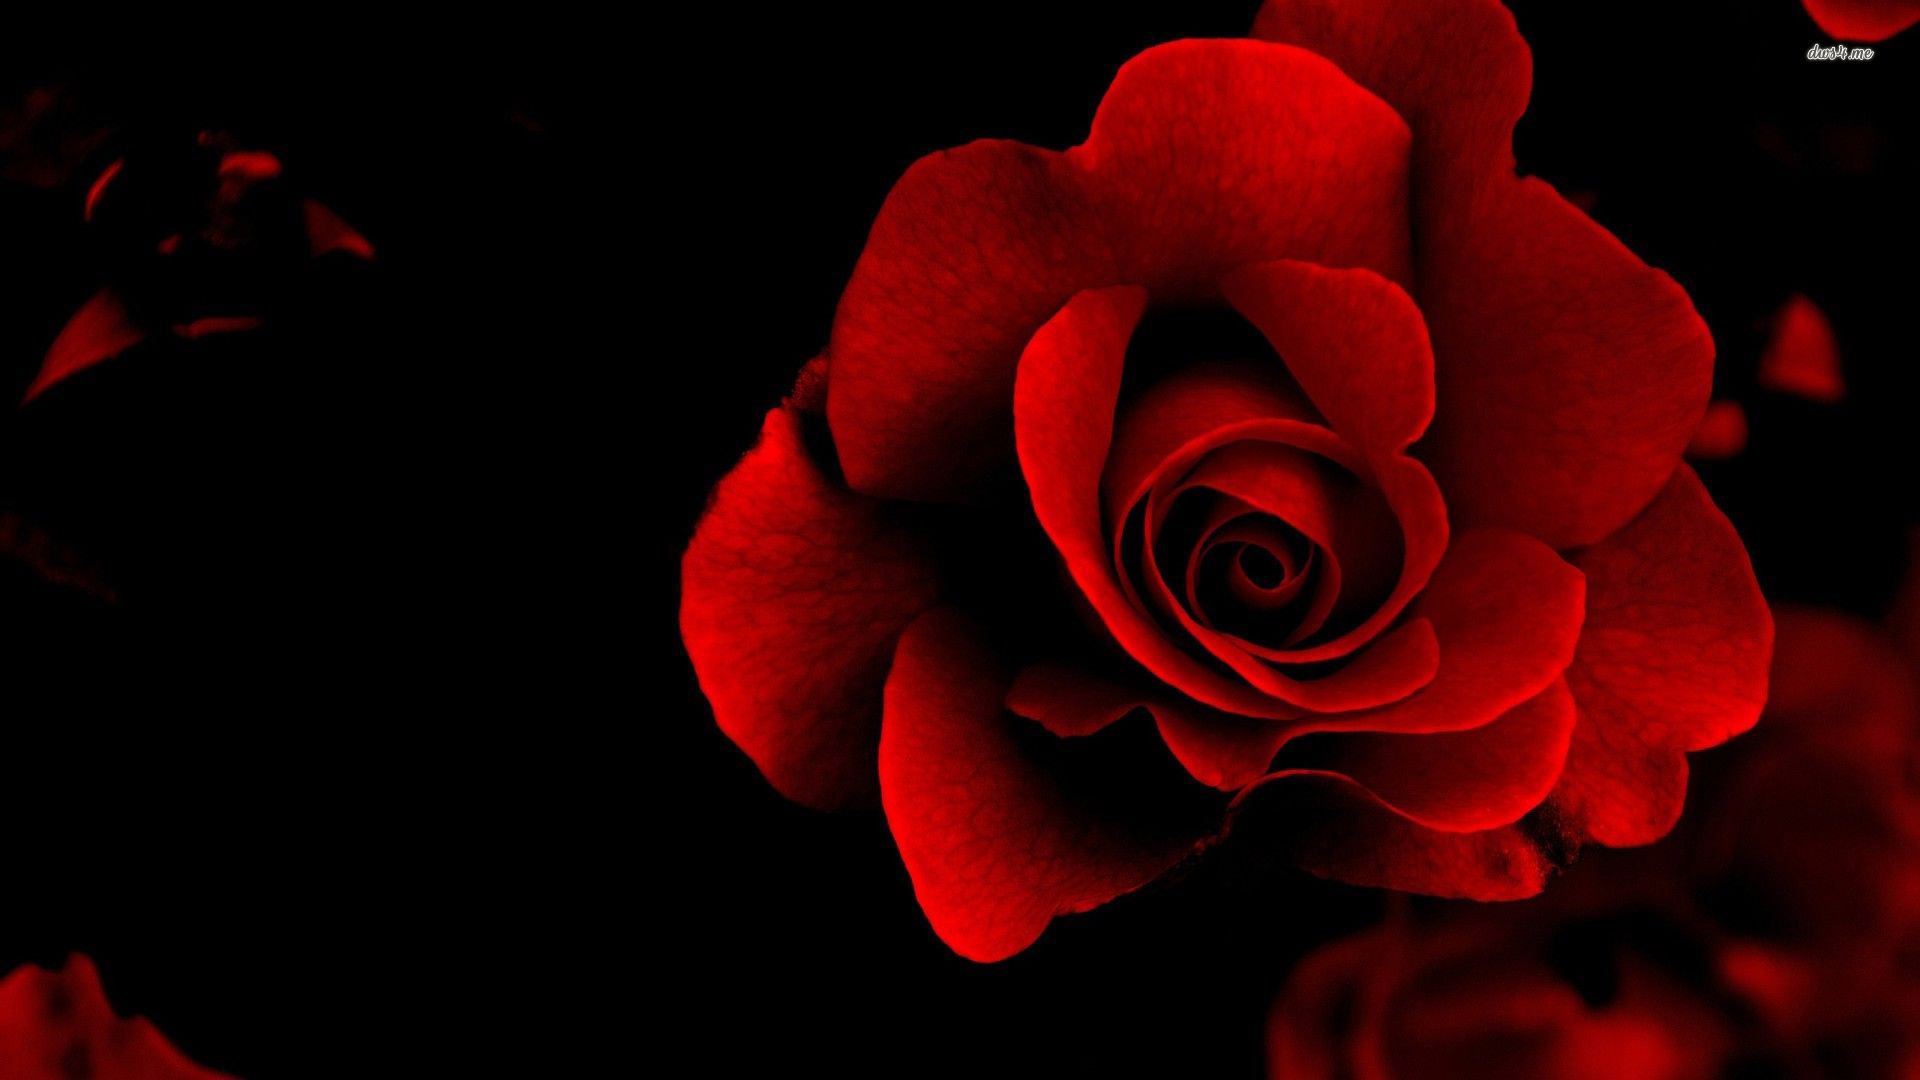 You Can Velvet Red Rose Flower Wallpaper In